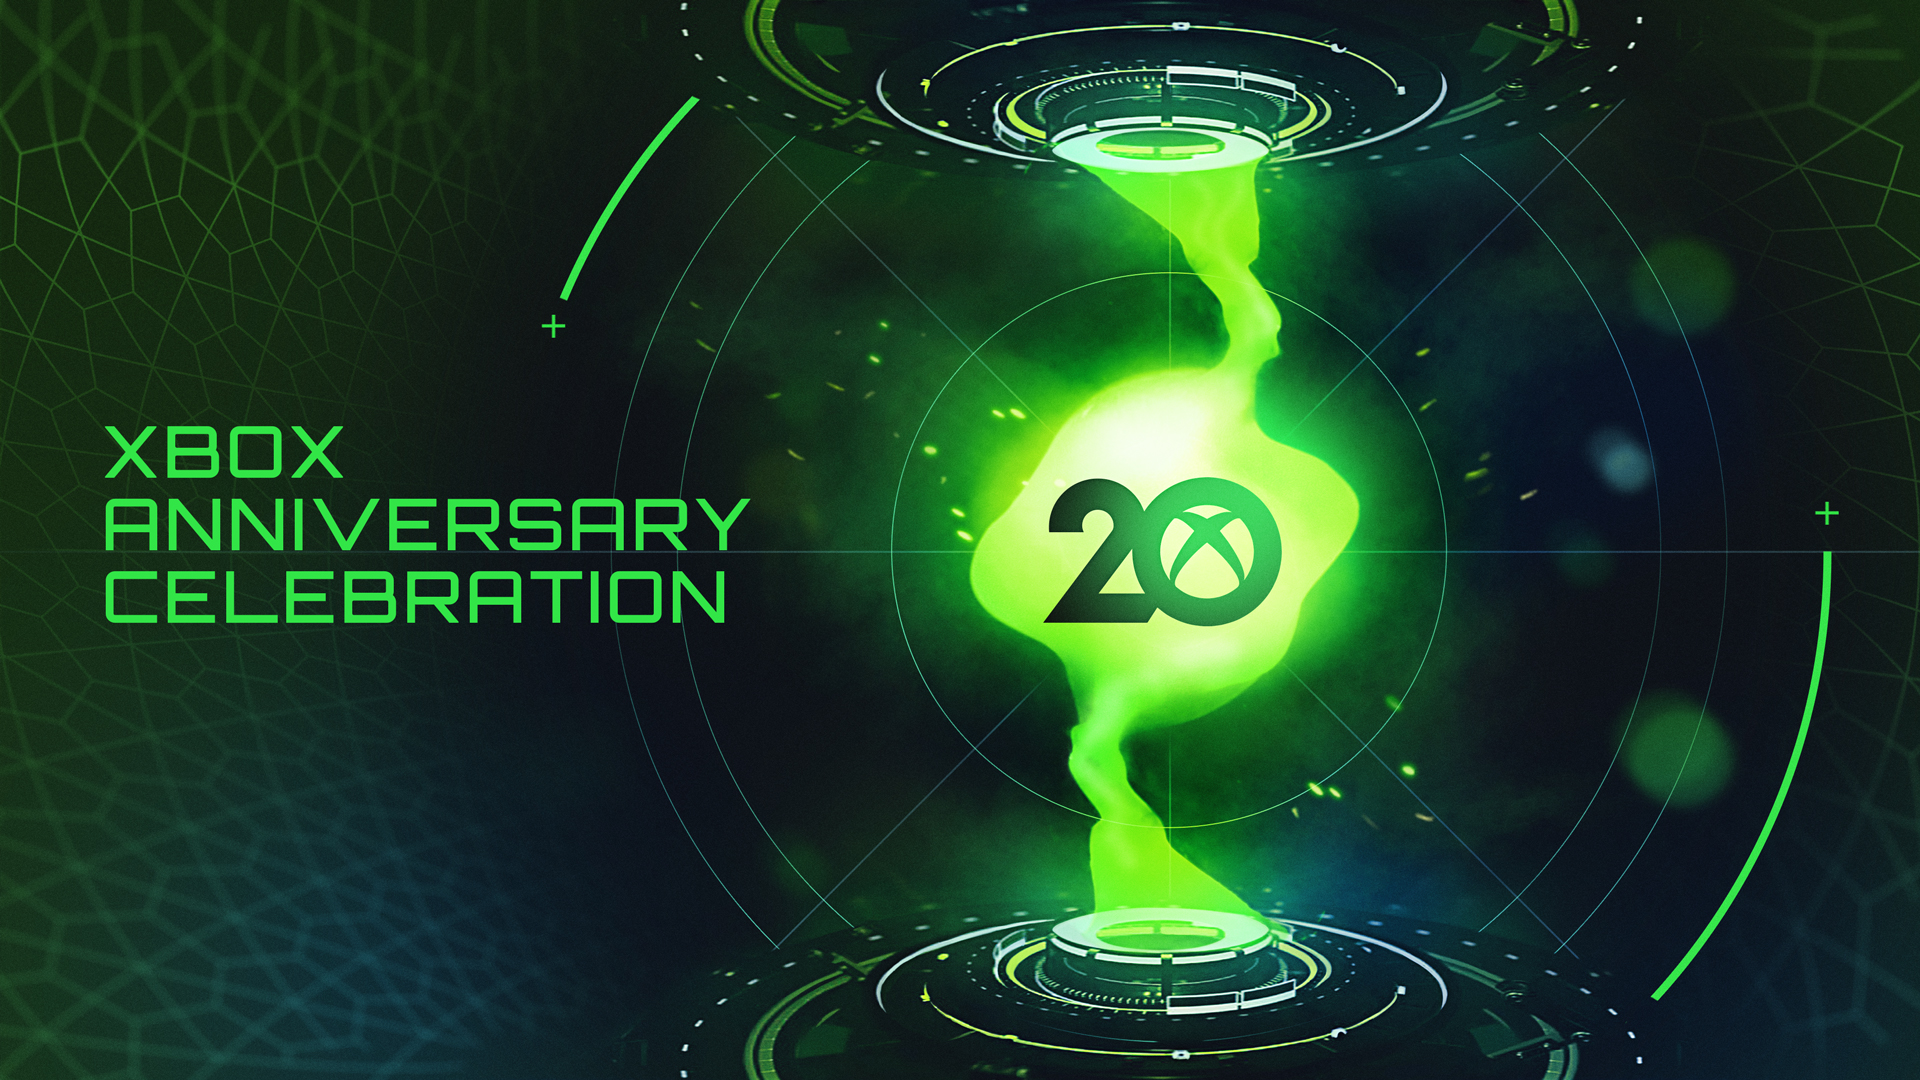 Video For Feiere mit uns 20 Jahre Xbox: Halo Infinite Multiplayer Beta jetzt verfügbar